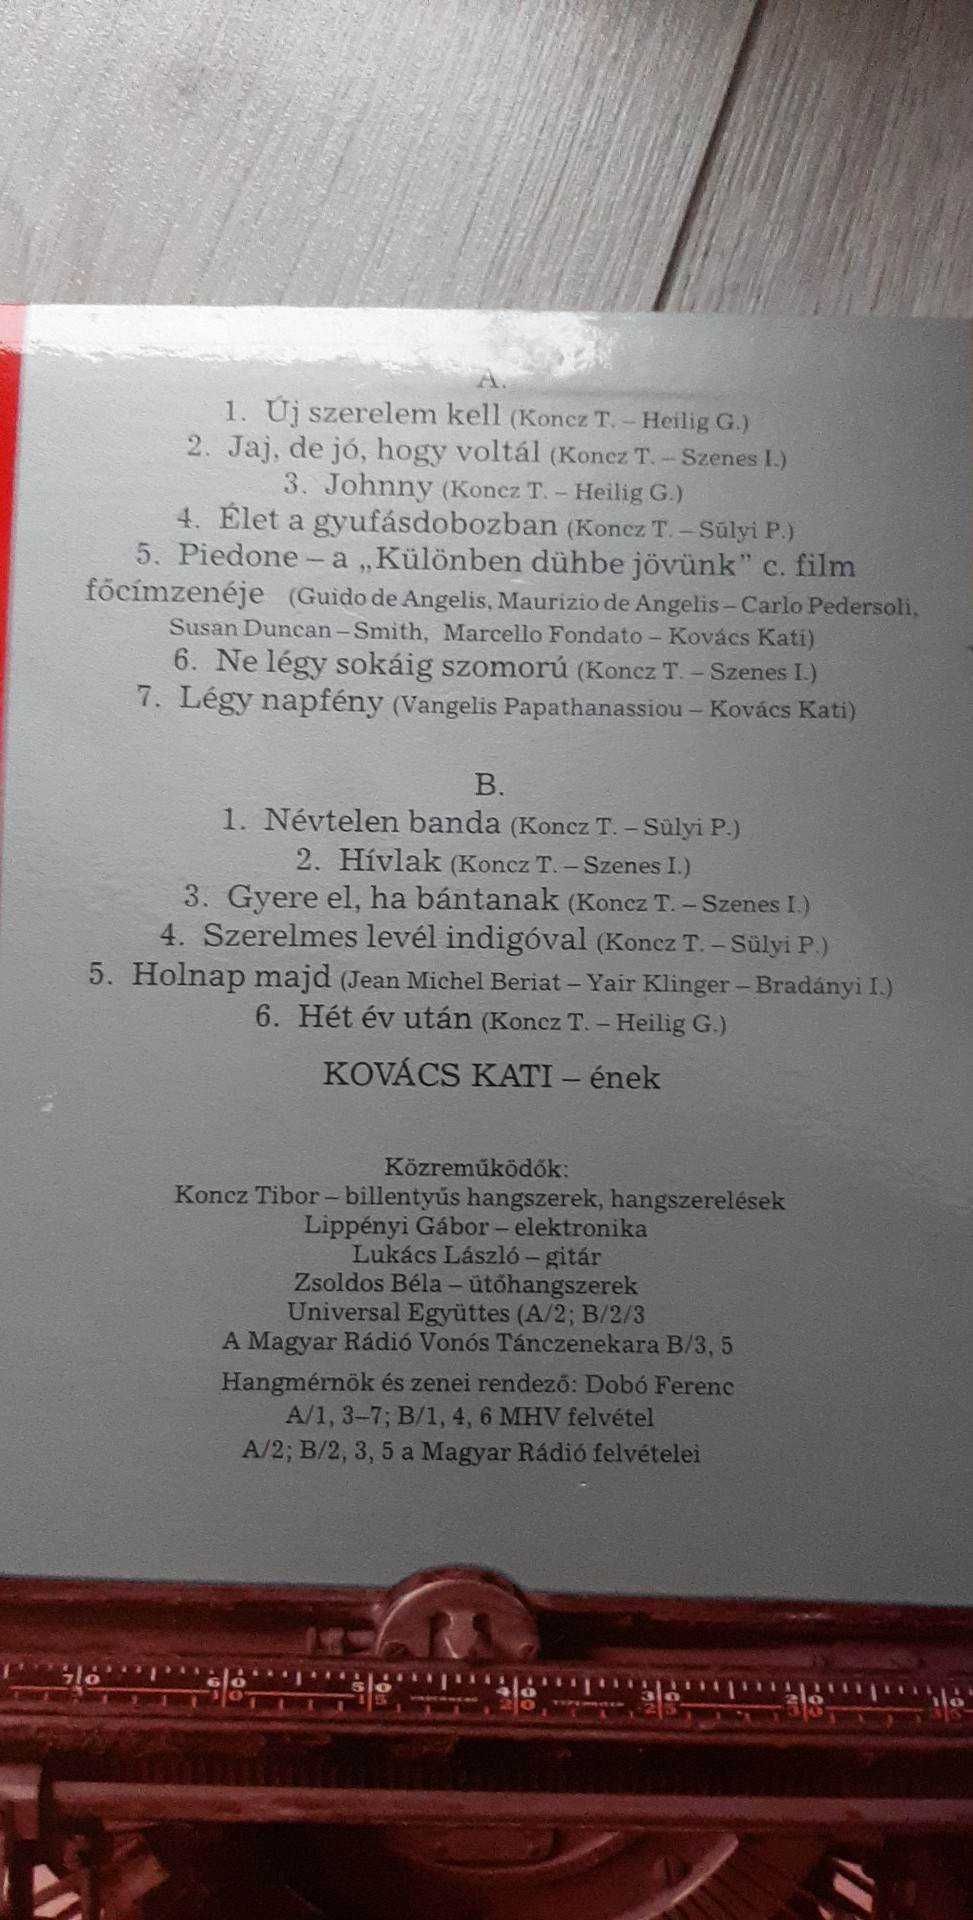 Kati Kovacs - szerelmes level indigoval/ płyta winylowa